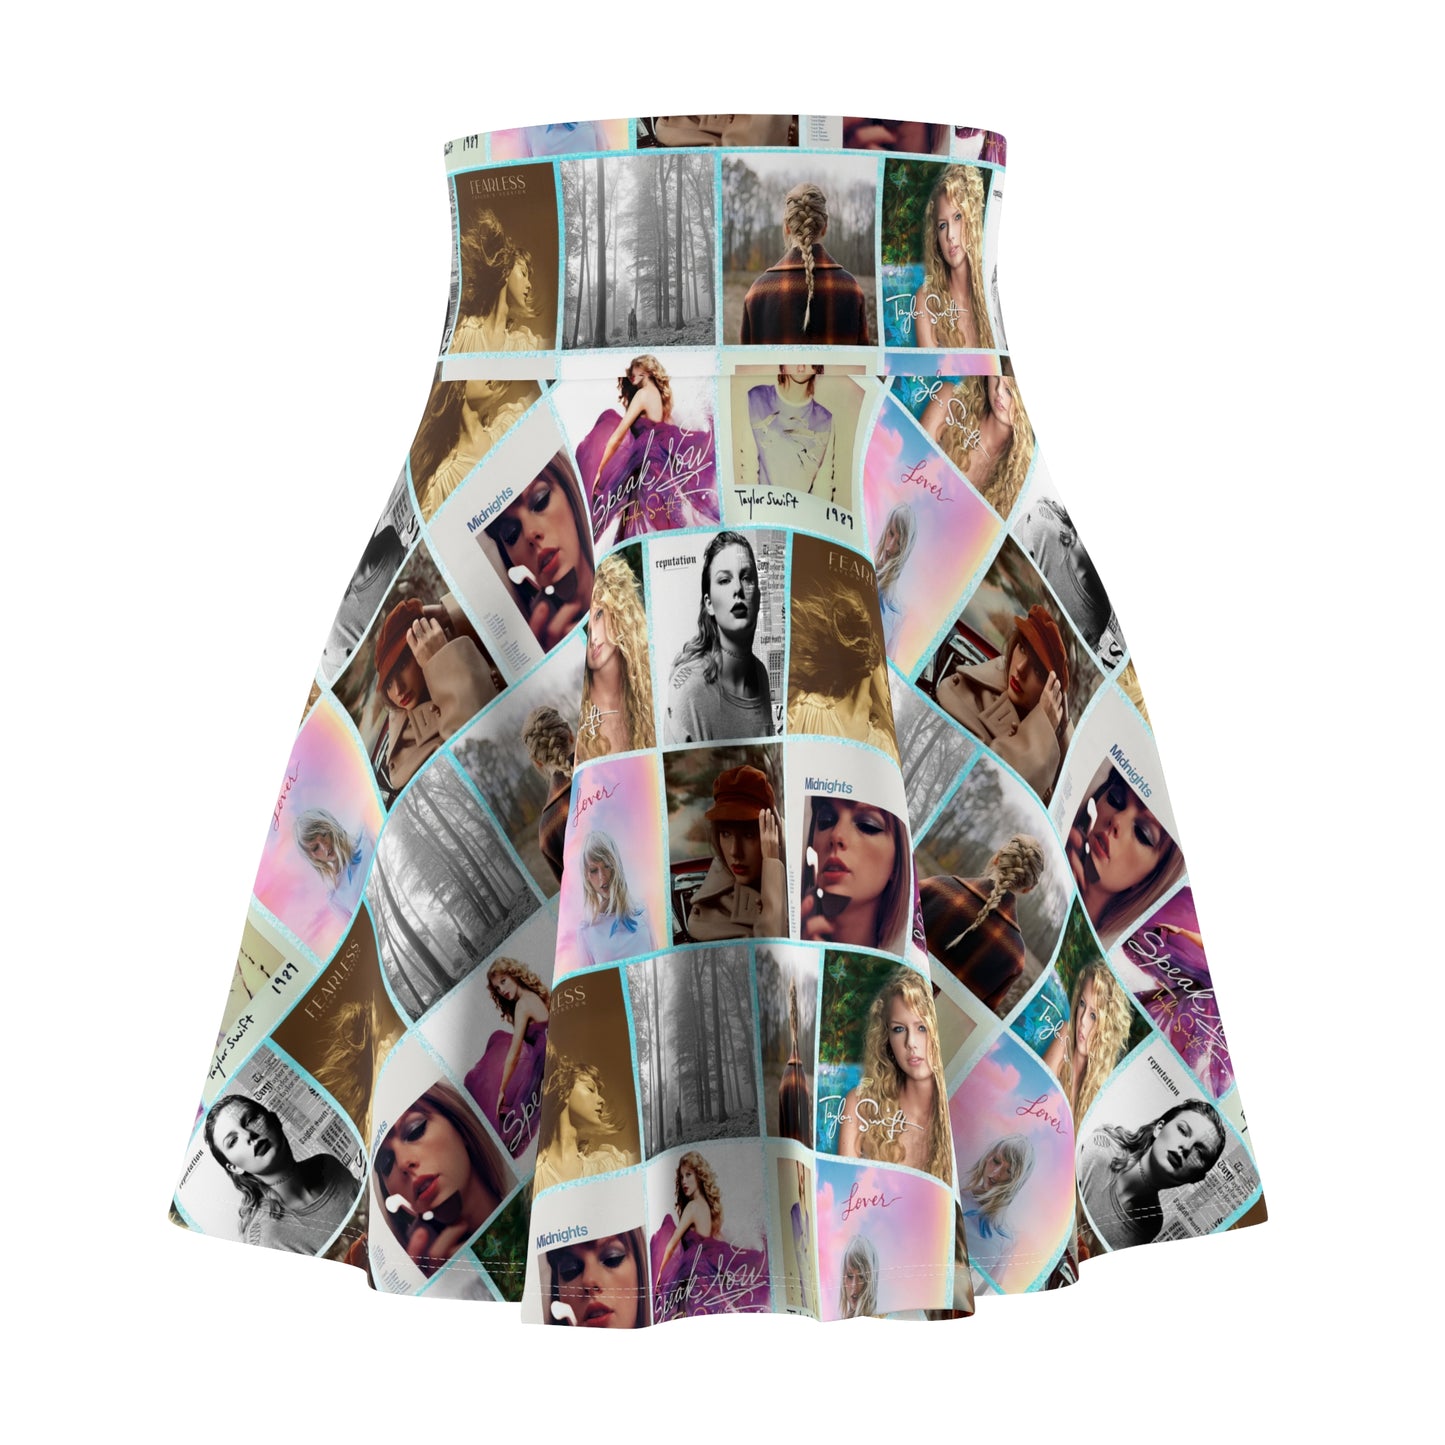 Taylor Swift Album Art Collage Pattern Women's Skater Skirt